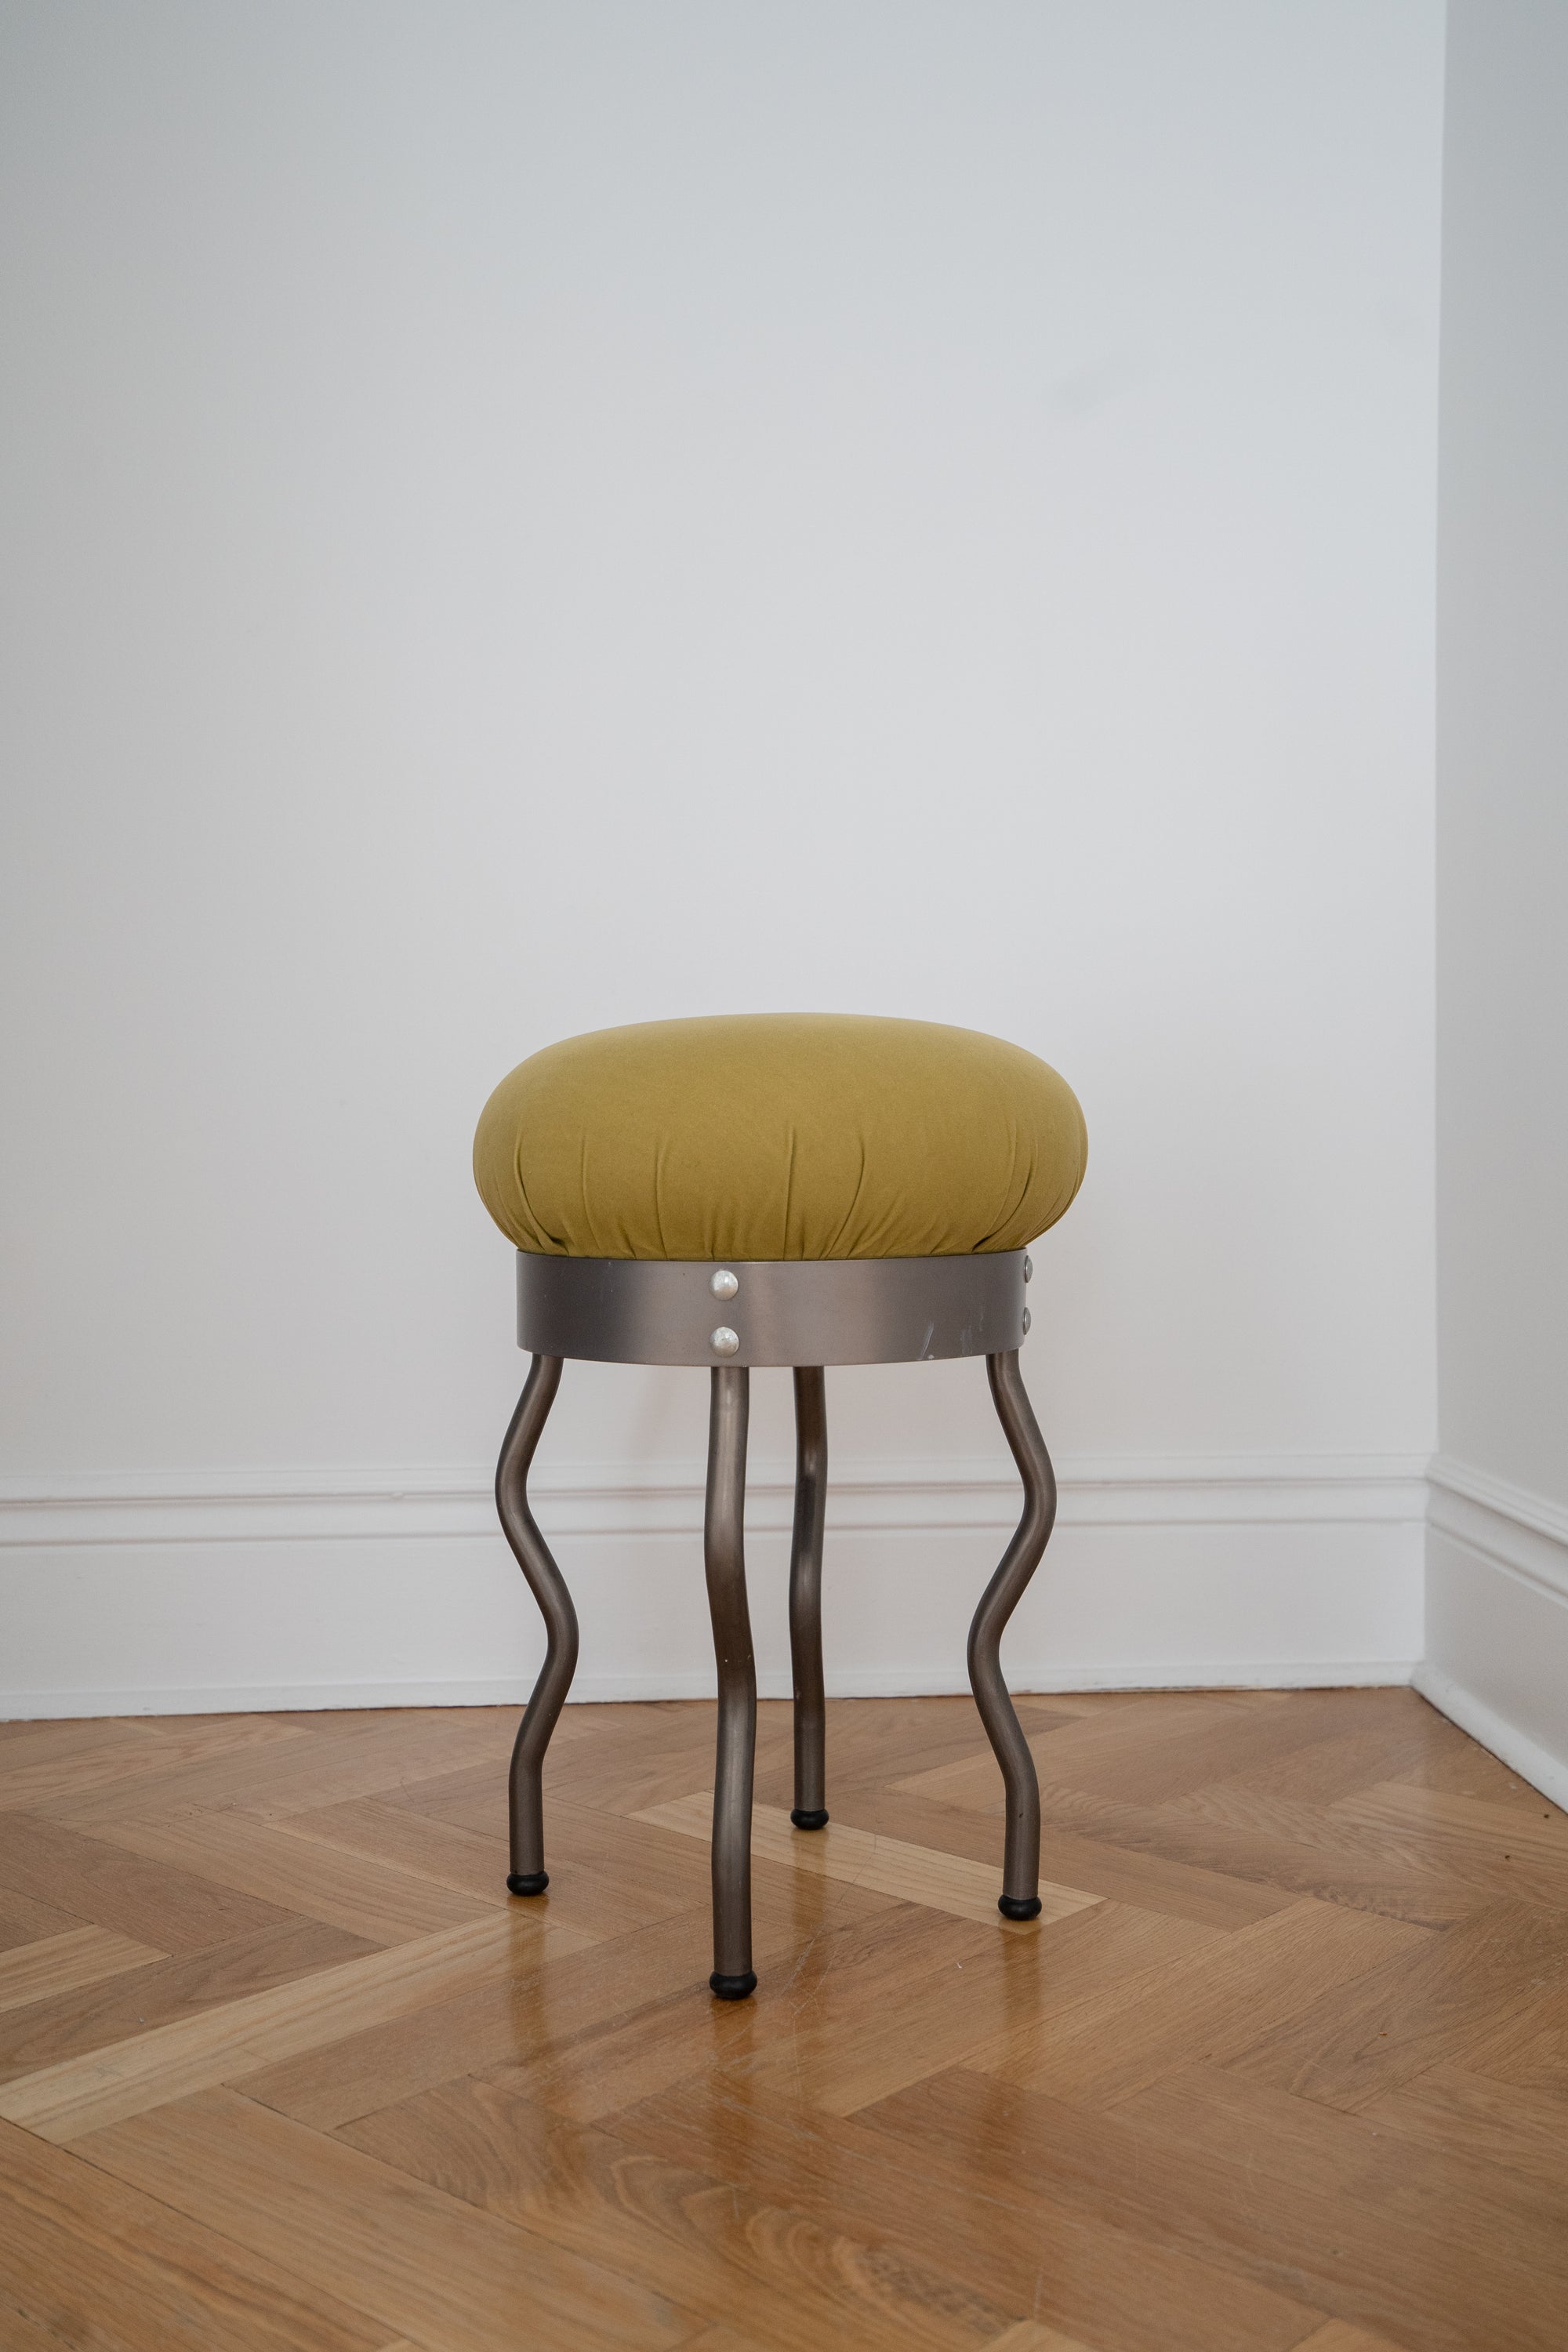 Vintage Uri IKEA stool